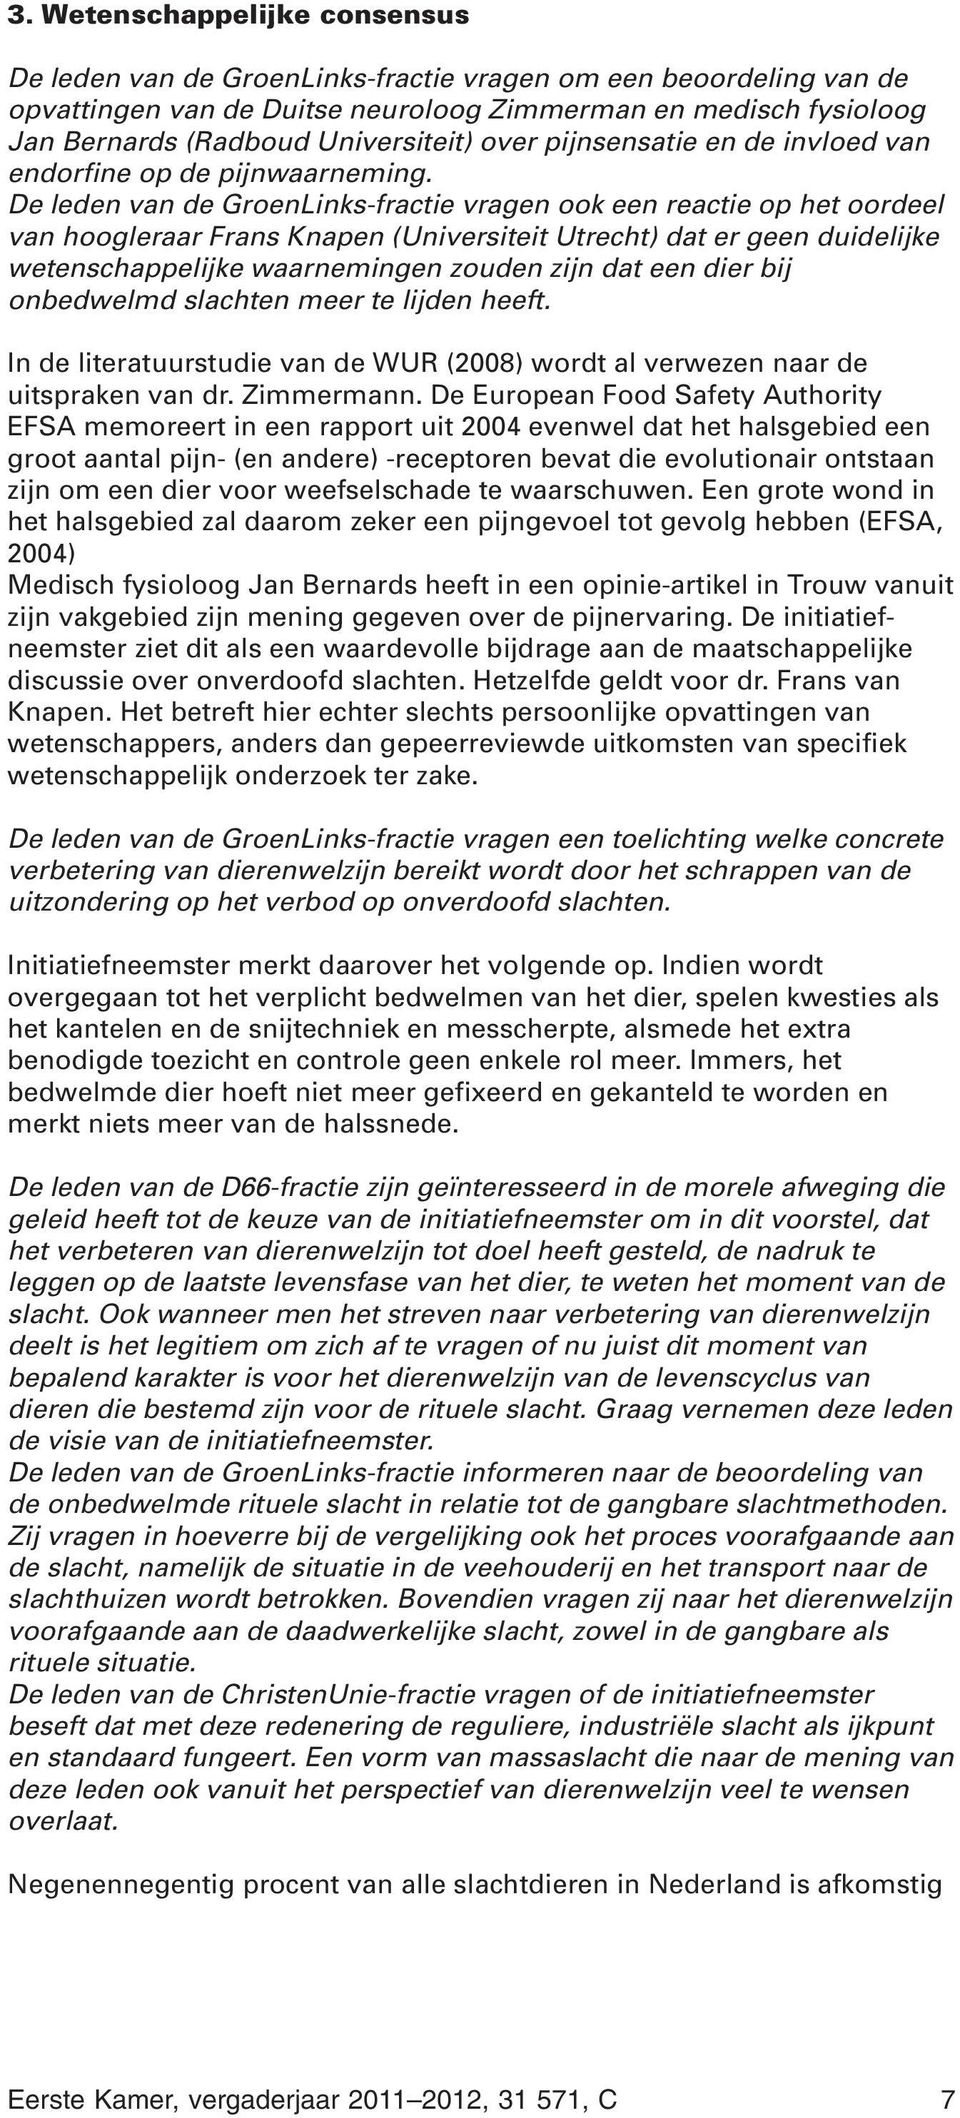 De leden van de GroenLinks-fractie vragen ook een reactie op het oordeel van hoogleraar Frans Knapen (Universiteit Utrecht) dat er geen duidelijke wetenschappelijke waarnemingen zouden zijn dat een